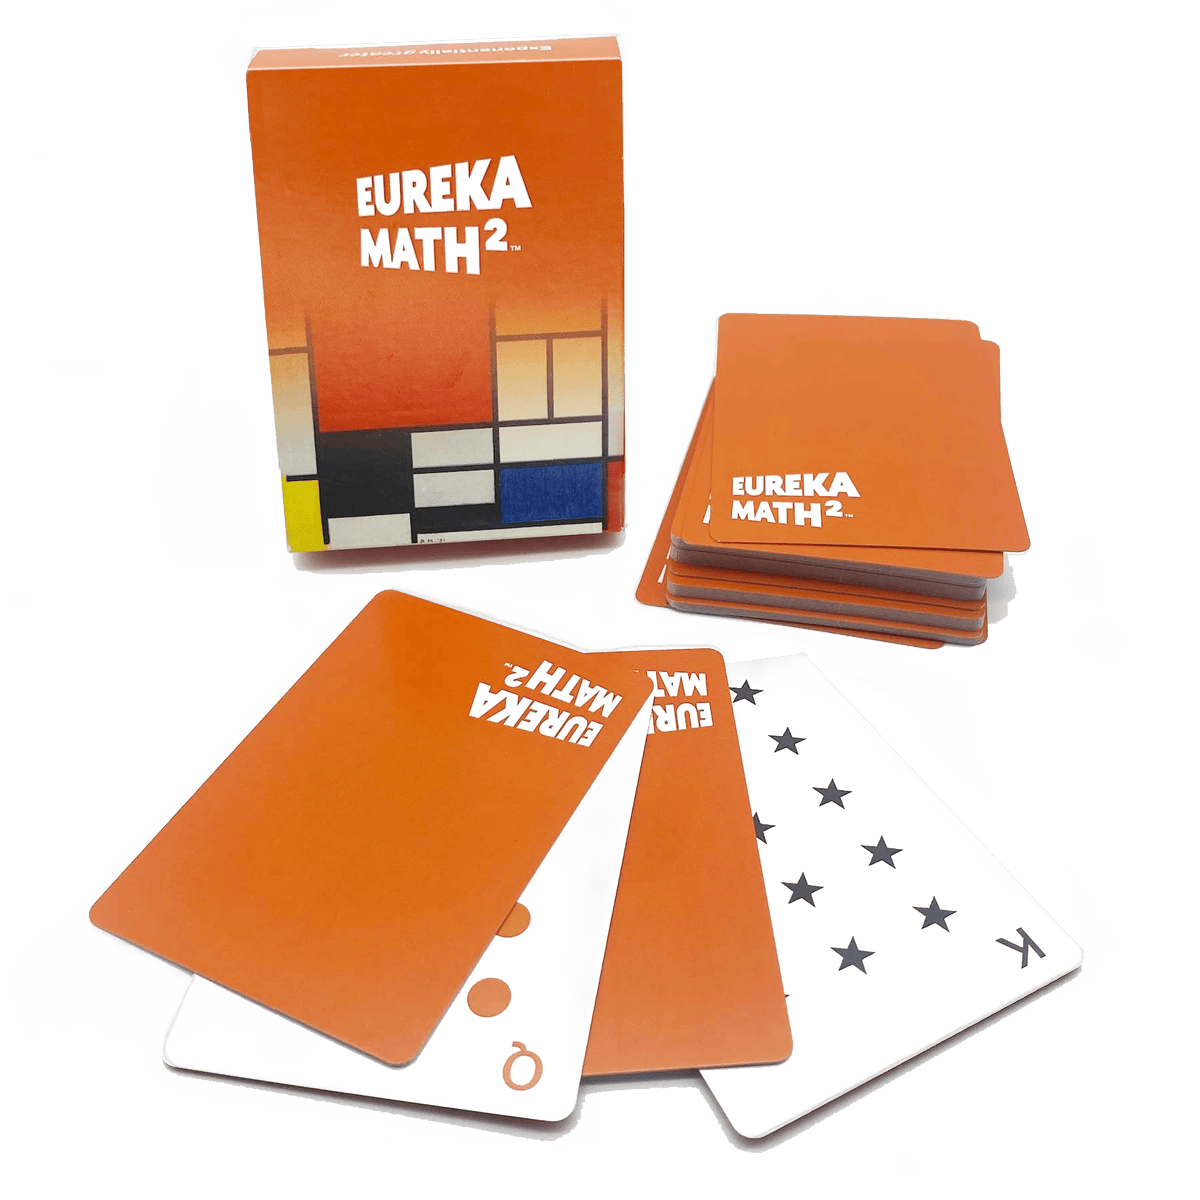 Eureka Math 2 - Playing Cards Deck